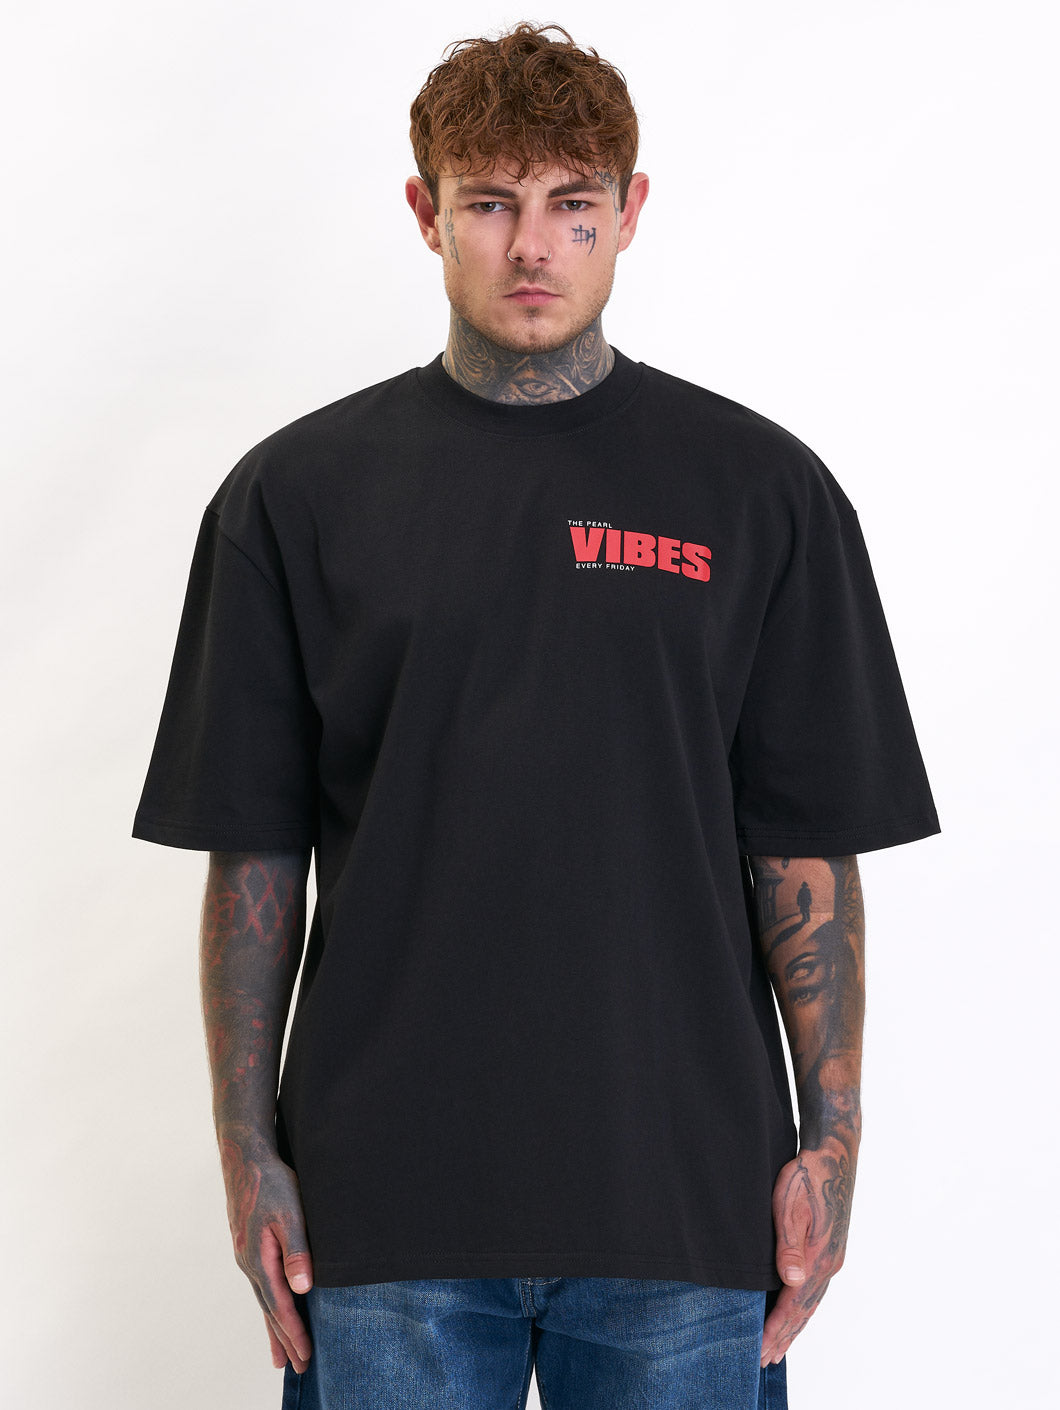 vibes t-shirt - 3